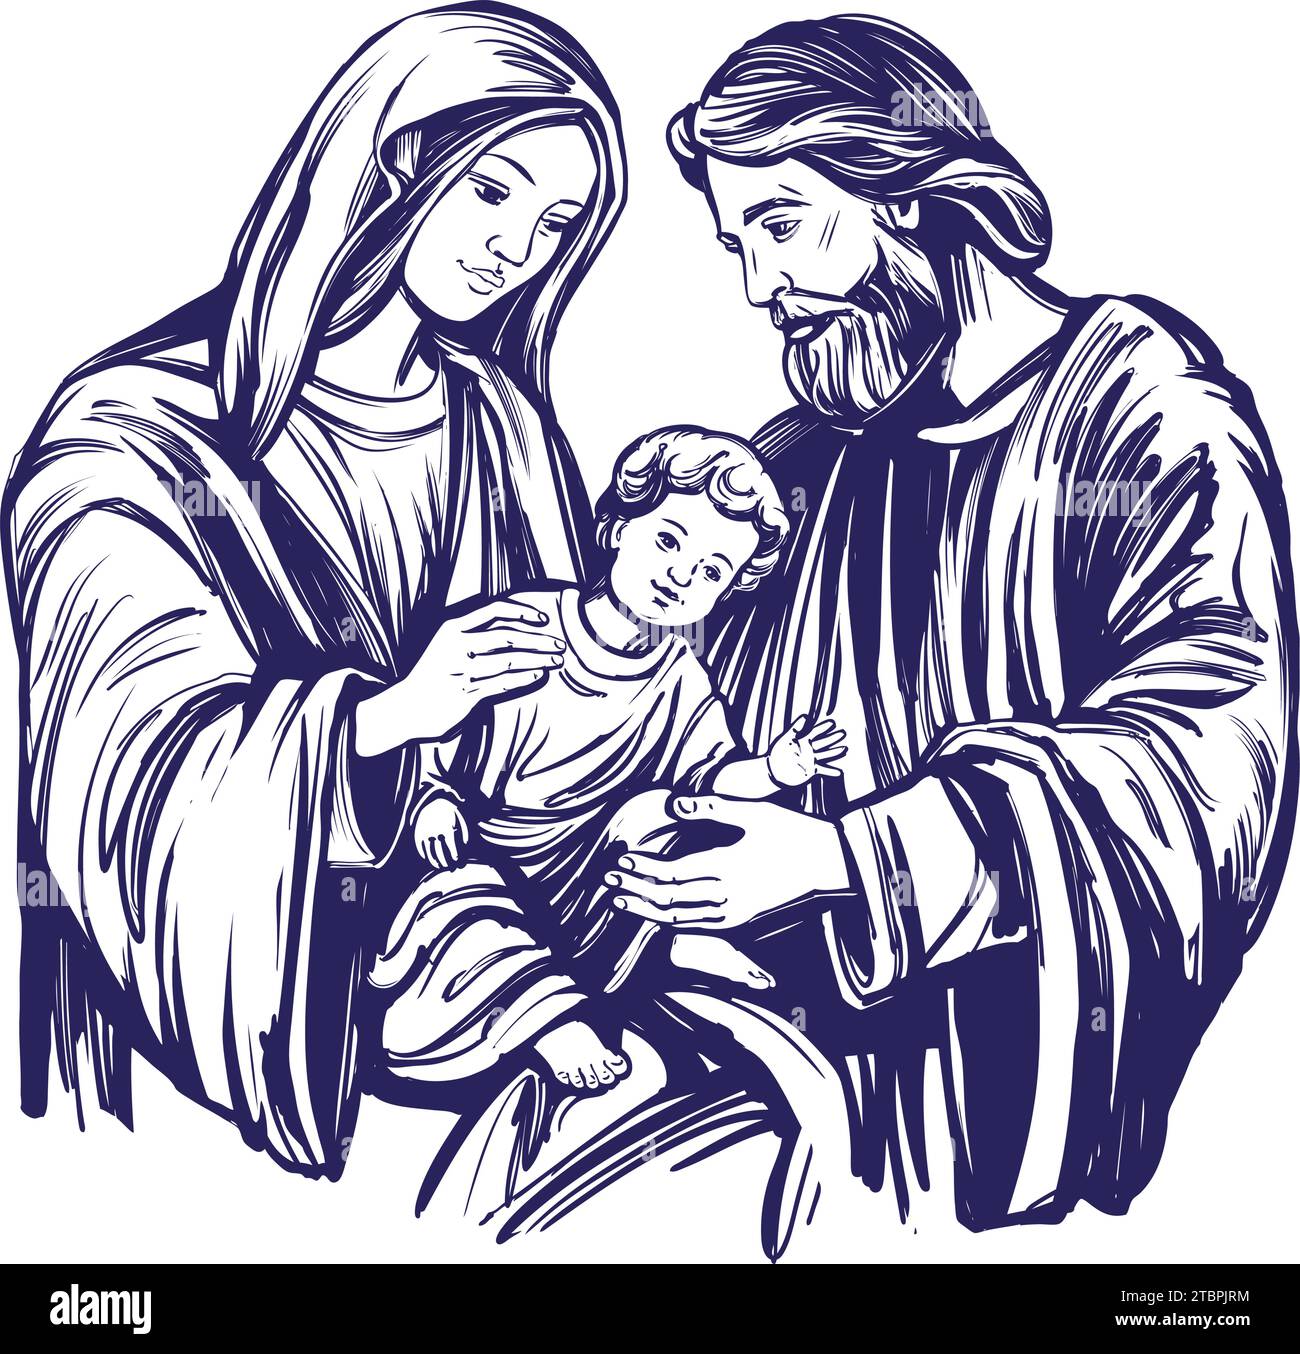 Frohe Weihnachten. Weihnachtsgeschichte. Maria, Joseph und das Jesuskind, Sohn Gottes, Symbol des Christentums handgezeichnete Vektor-Illustration. Stock Vektor